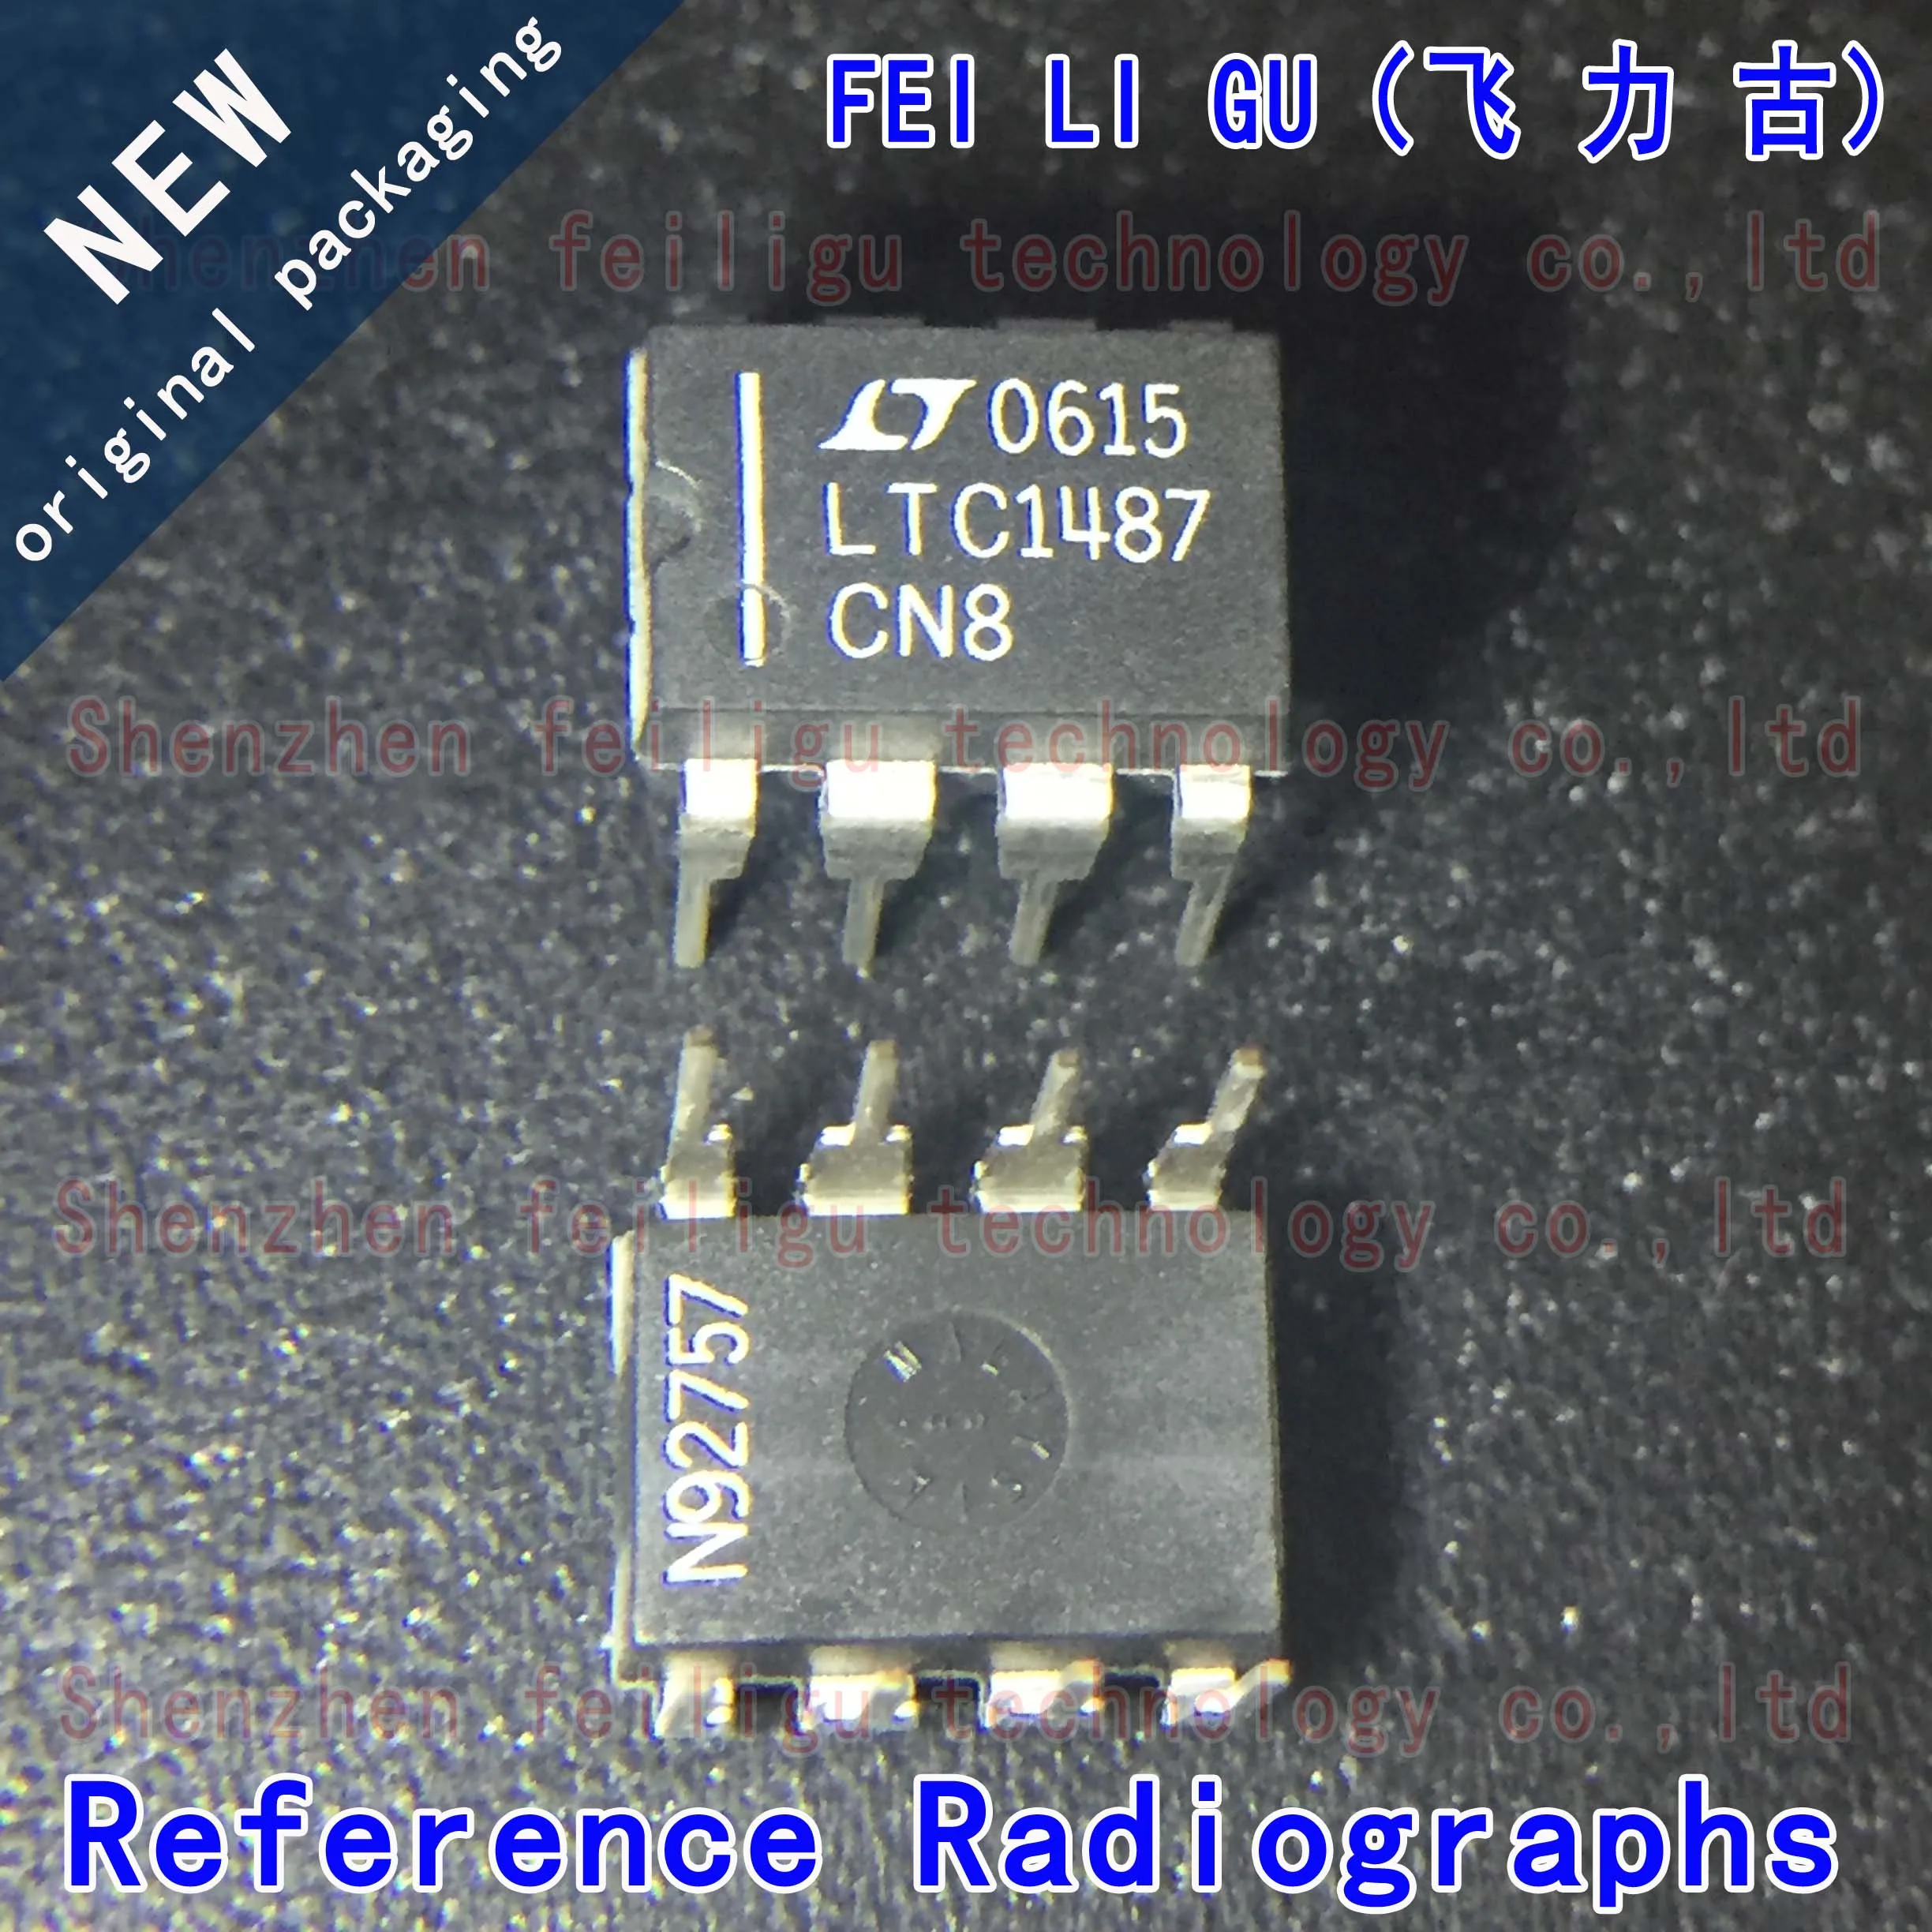 1~30PCS 100% New original LTC1487CN8#PBF LTC1487CN8 LTC1487 Package:DIP8 Inline RS-485/RS-422 Transceiver Chip